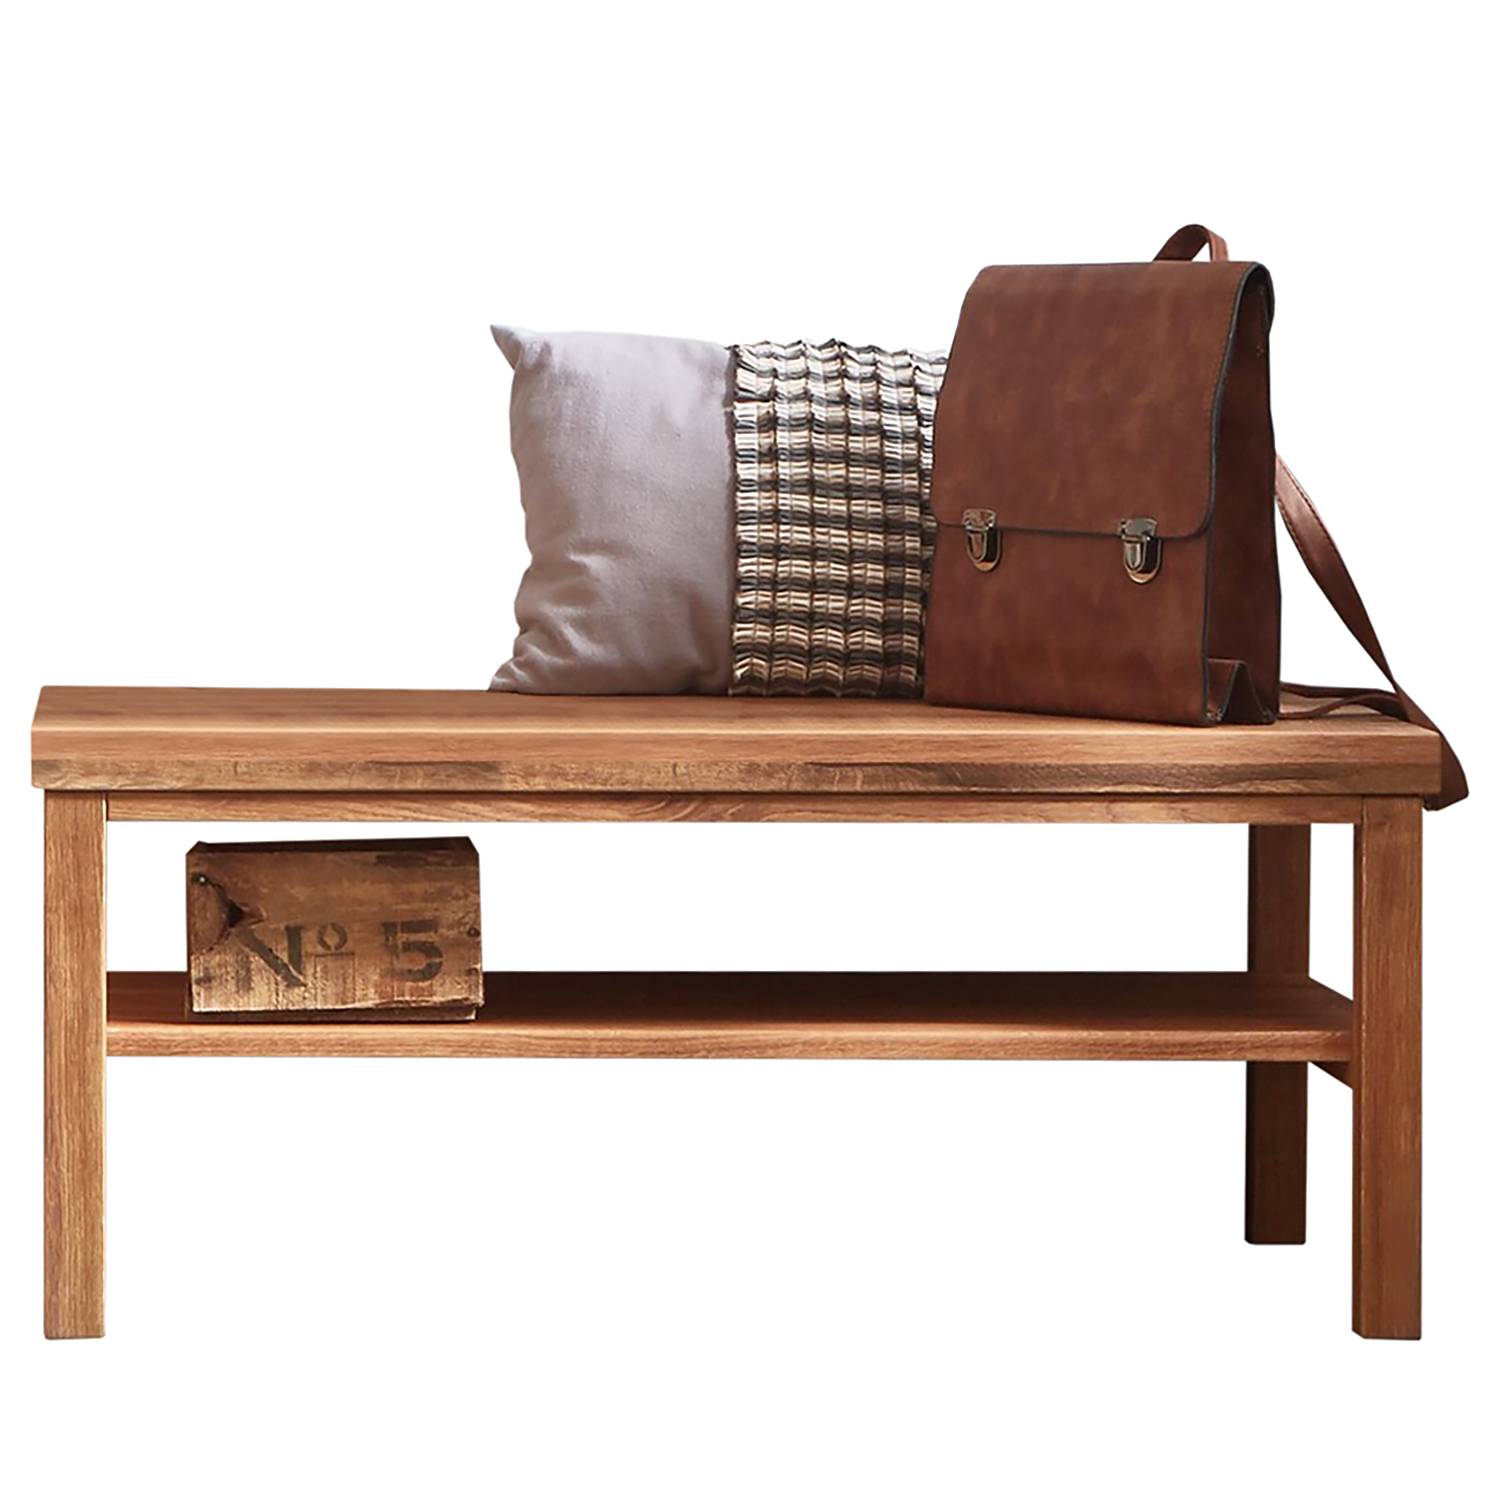 Mobile scarpiera legno massello Verwood – Acquista online